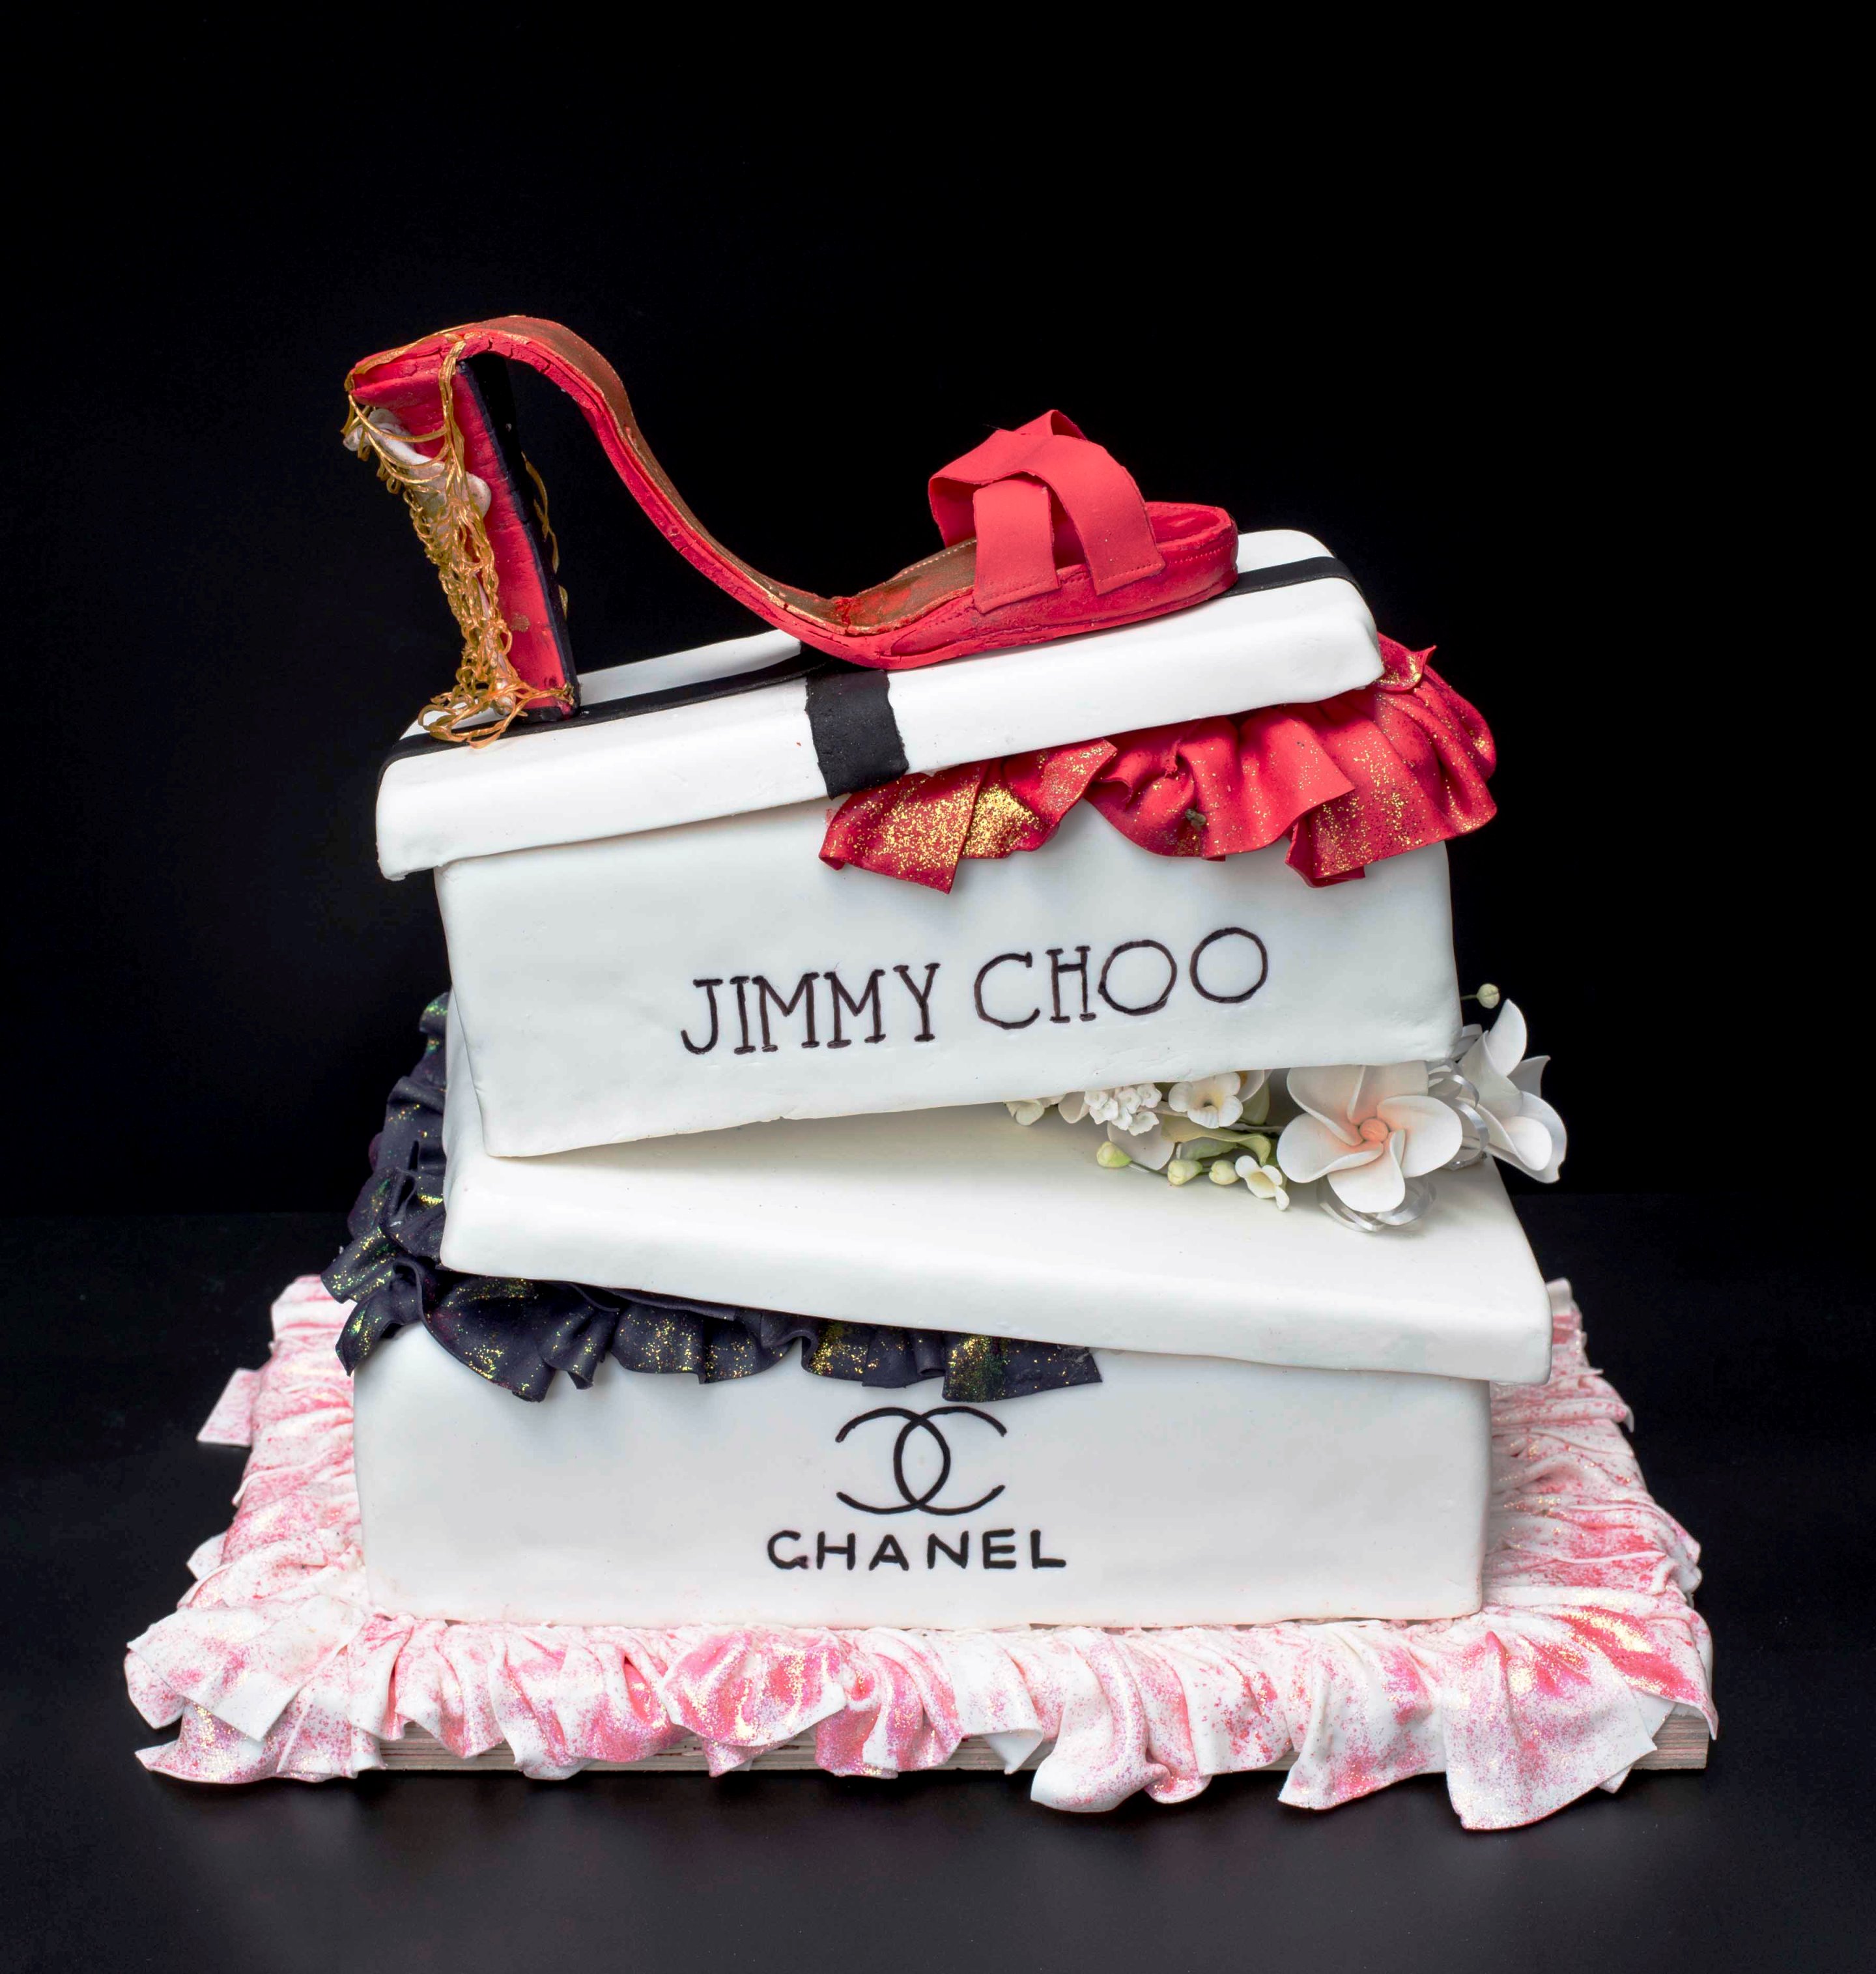  עוגות נעלי ג'ימי צ'ו. כרית שאנל. עיצוב וצילום מאיה פרי דפנא